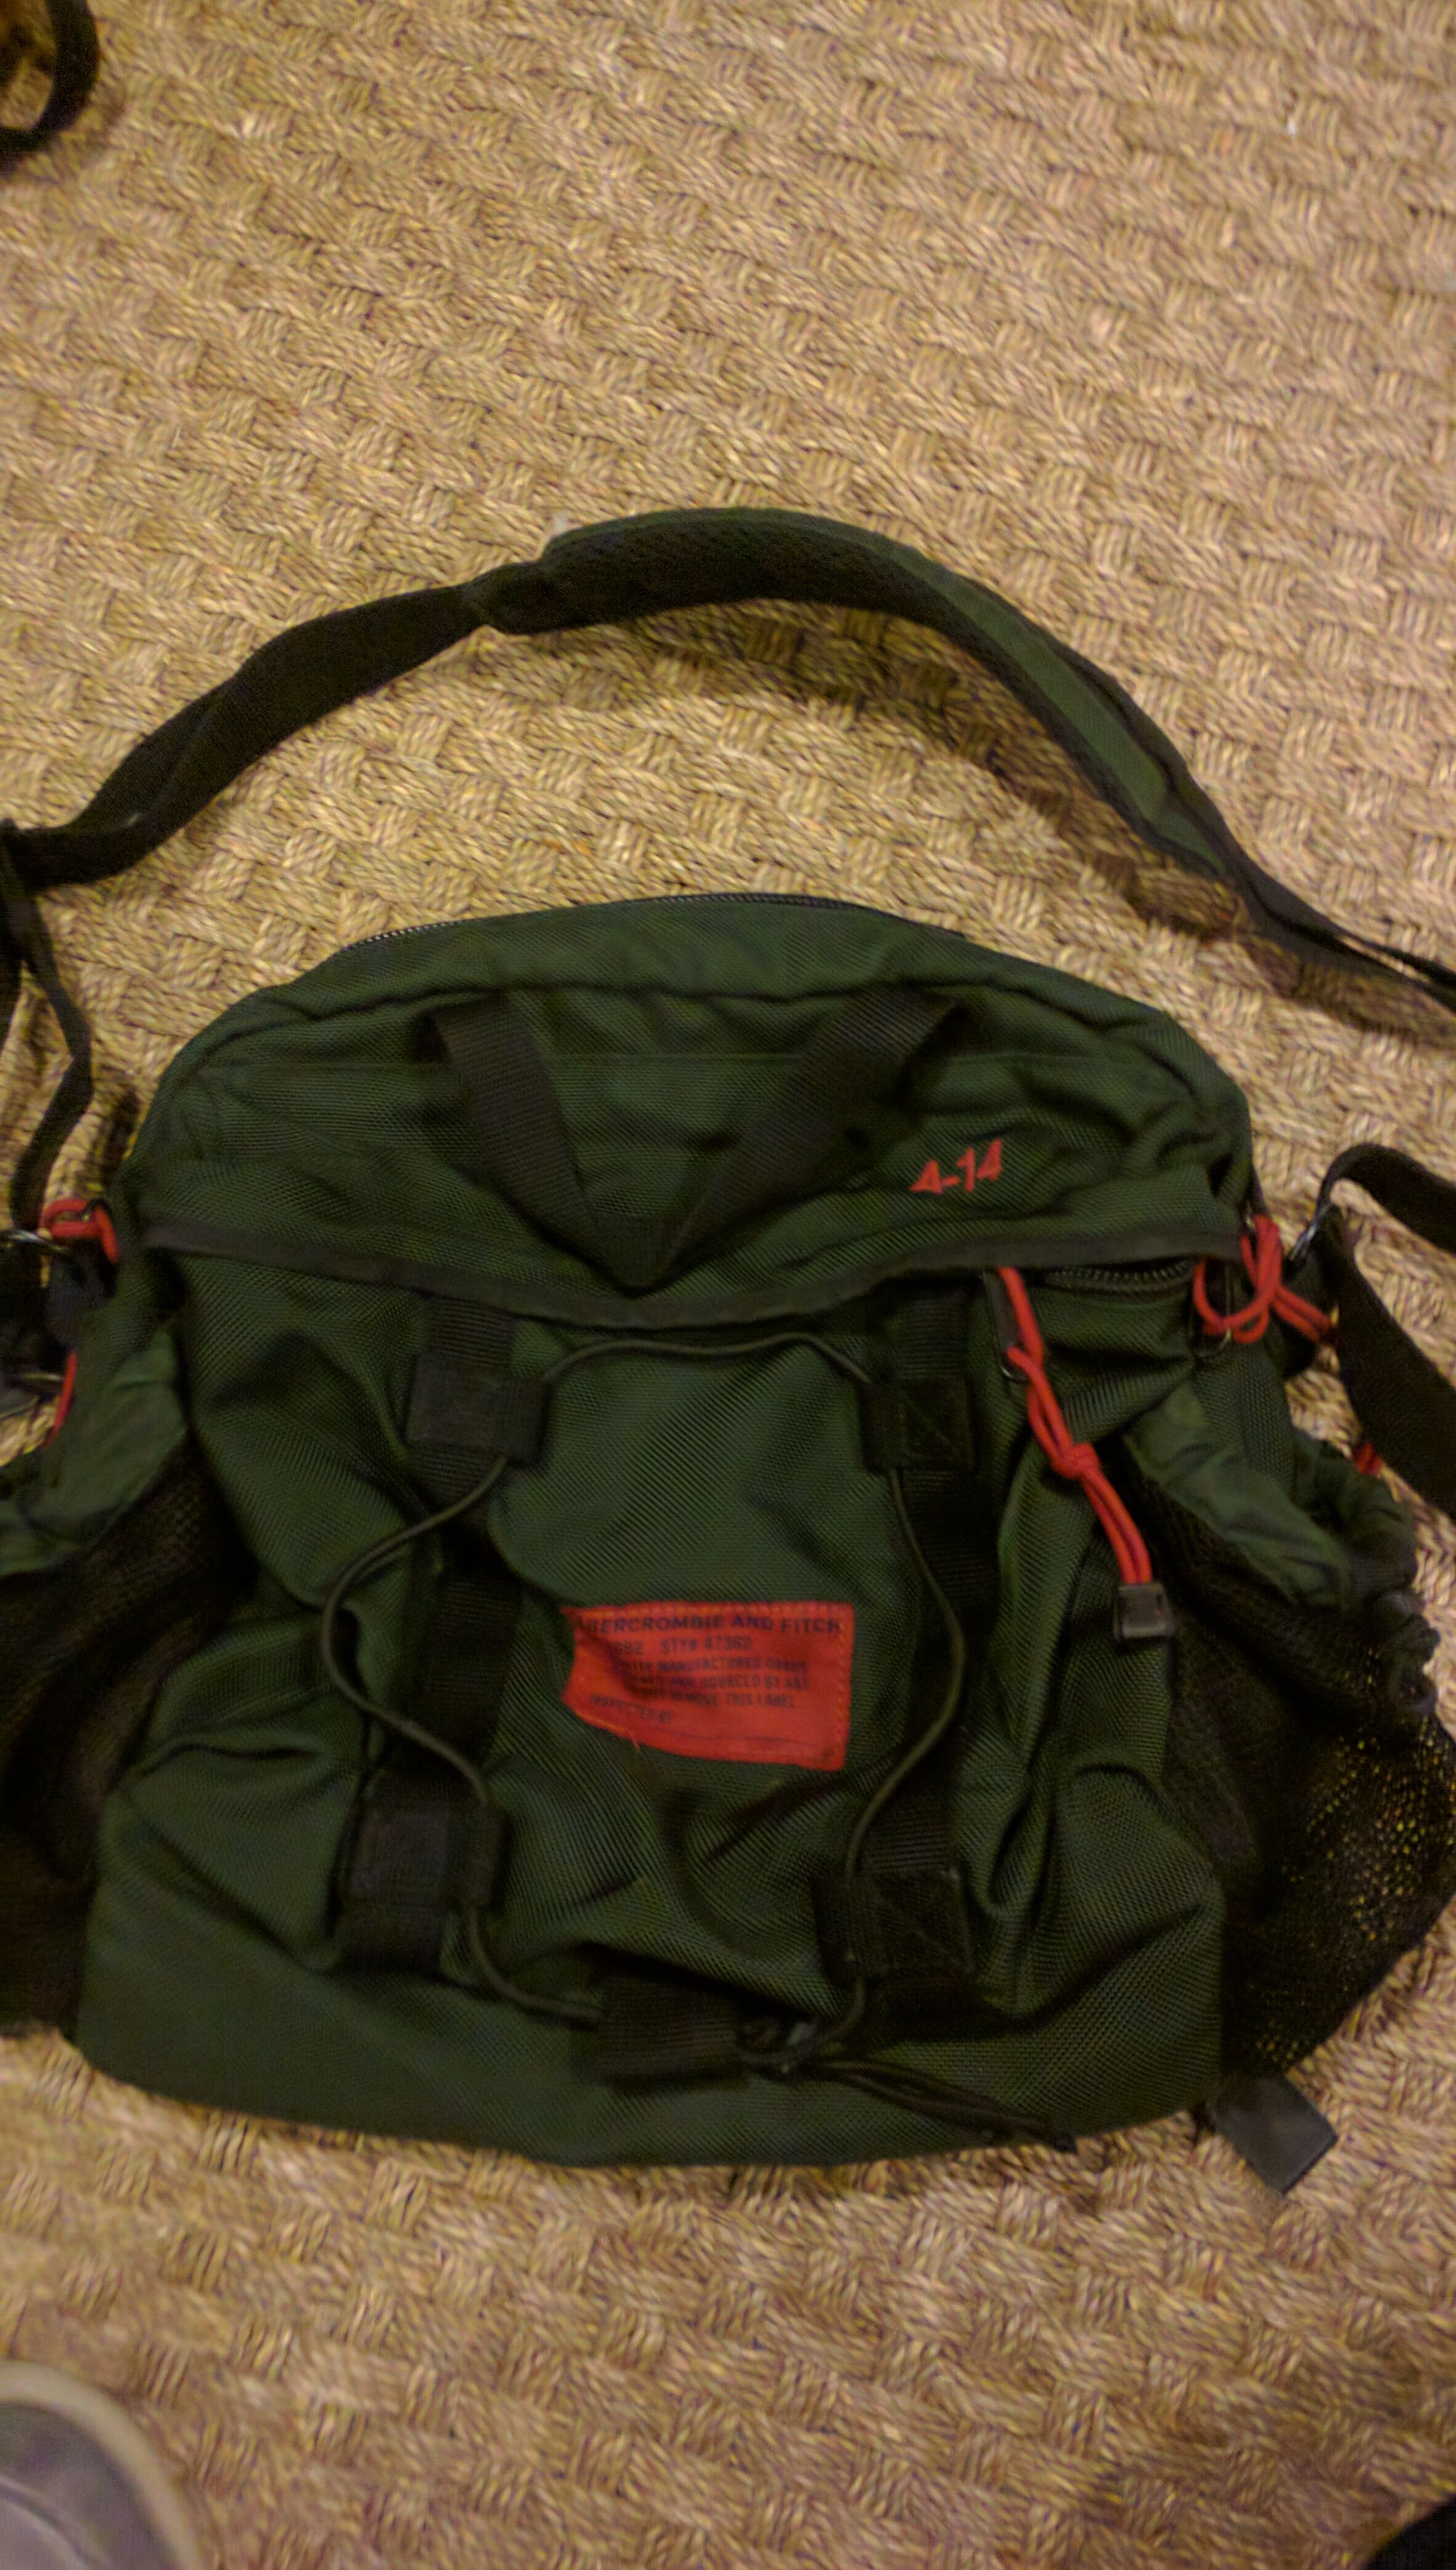 Rare Abercrombie A-14 shoulder bag backpack